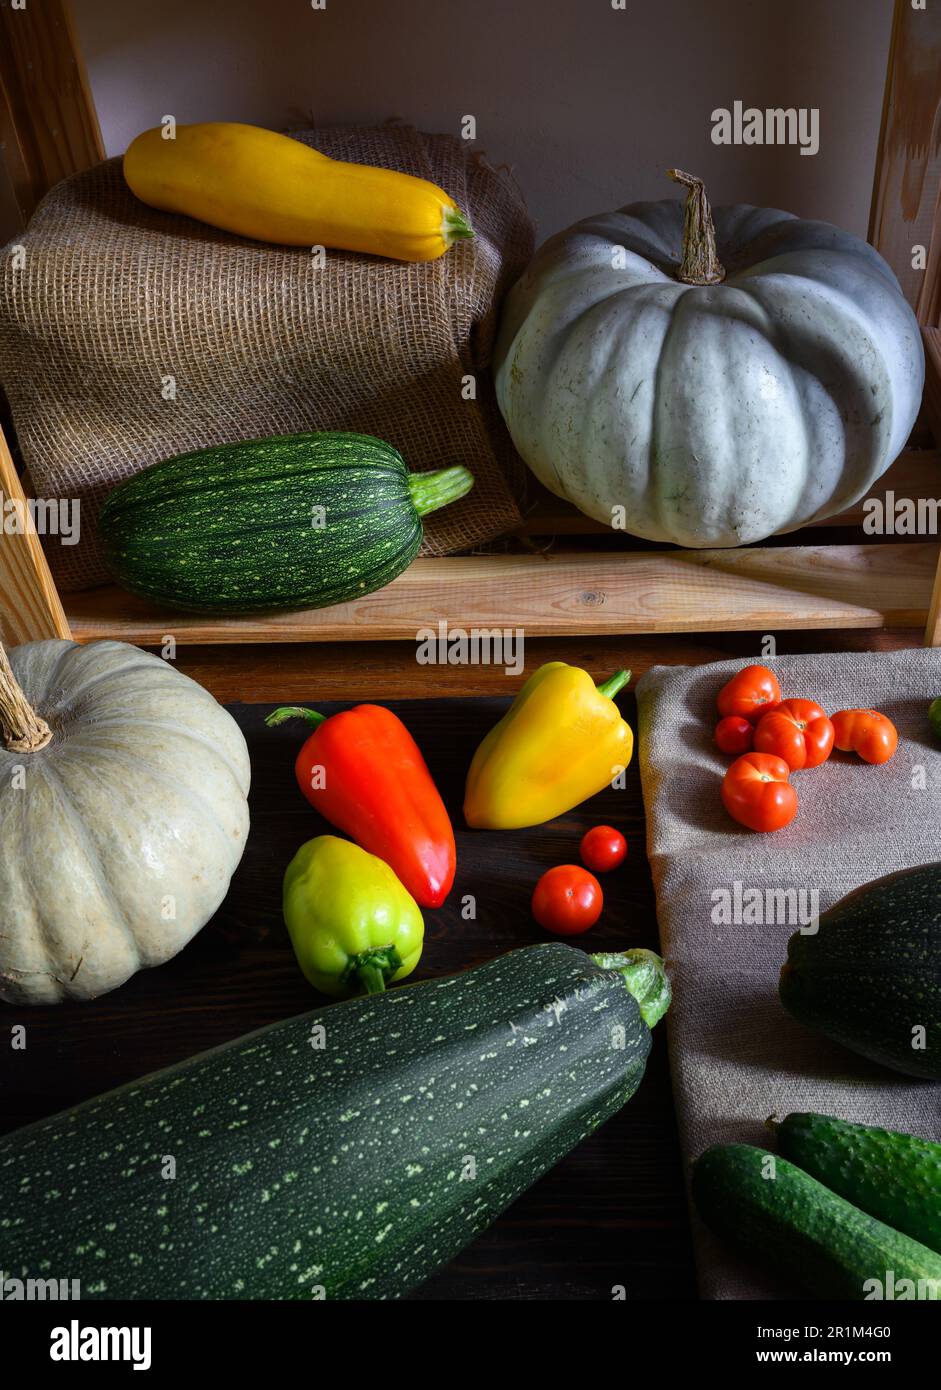 Midollo vegetale e zucche su scaffali di legno a casa, la vita ferma di cibo biologico. Zucchine, peperoni dolci e pomodori in un ambiente rustico. Raccolto, Foto Stock